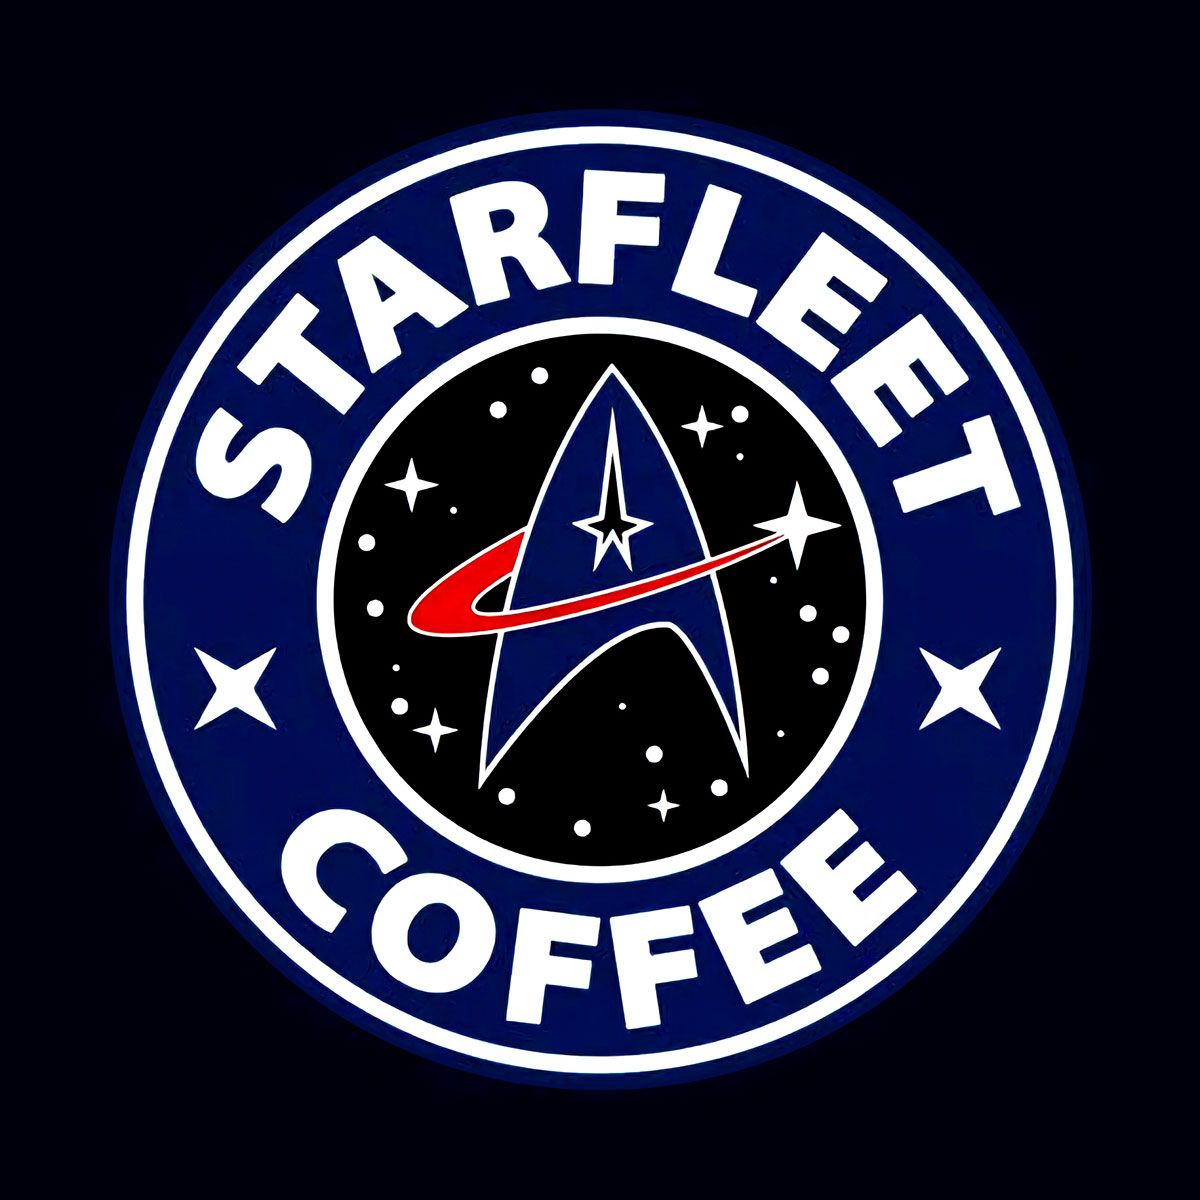 Nome do produto: Starfleet Coffe